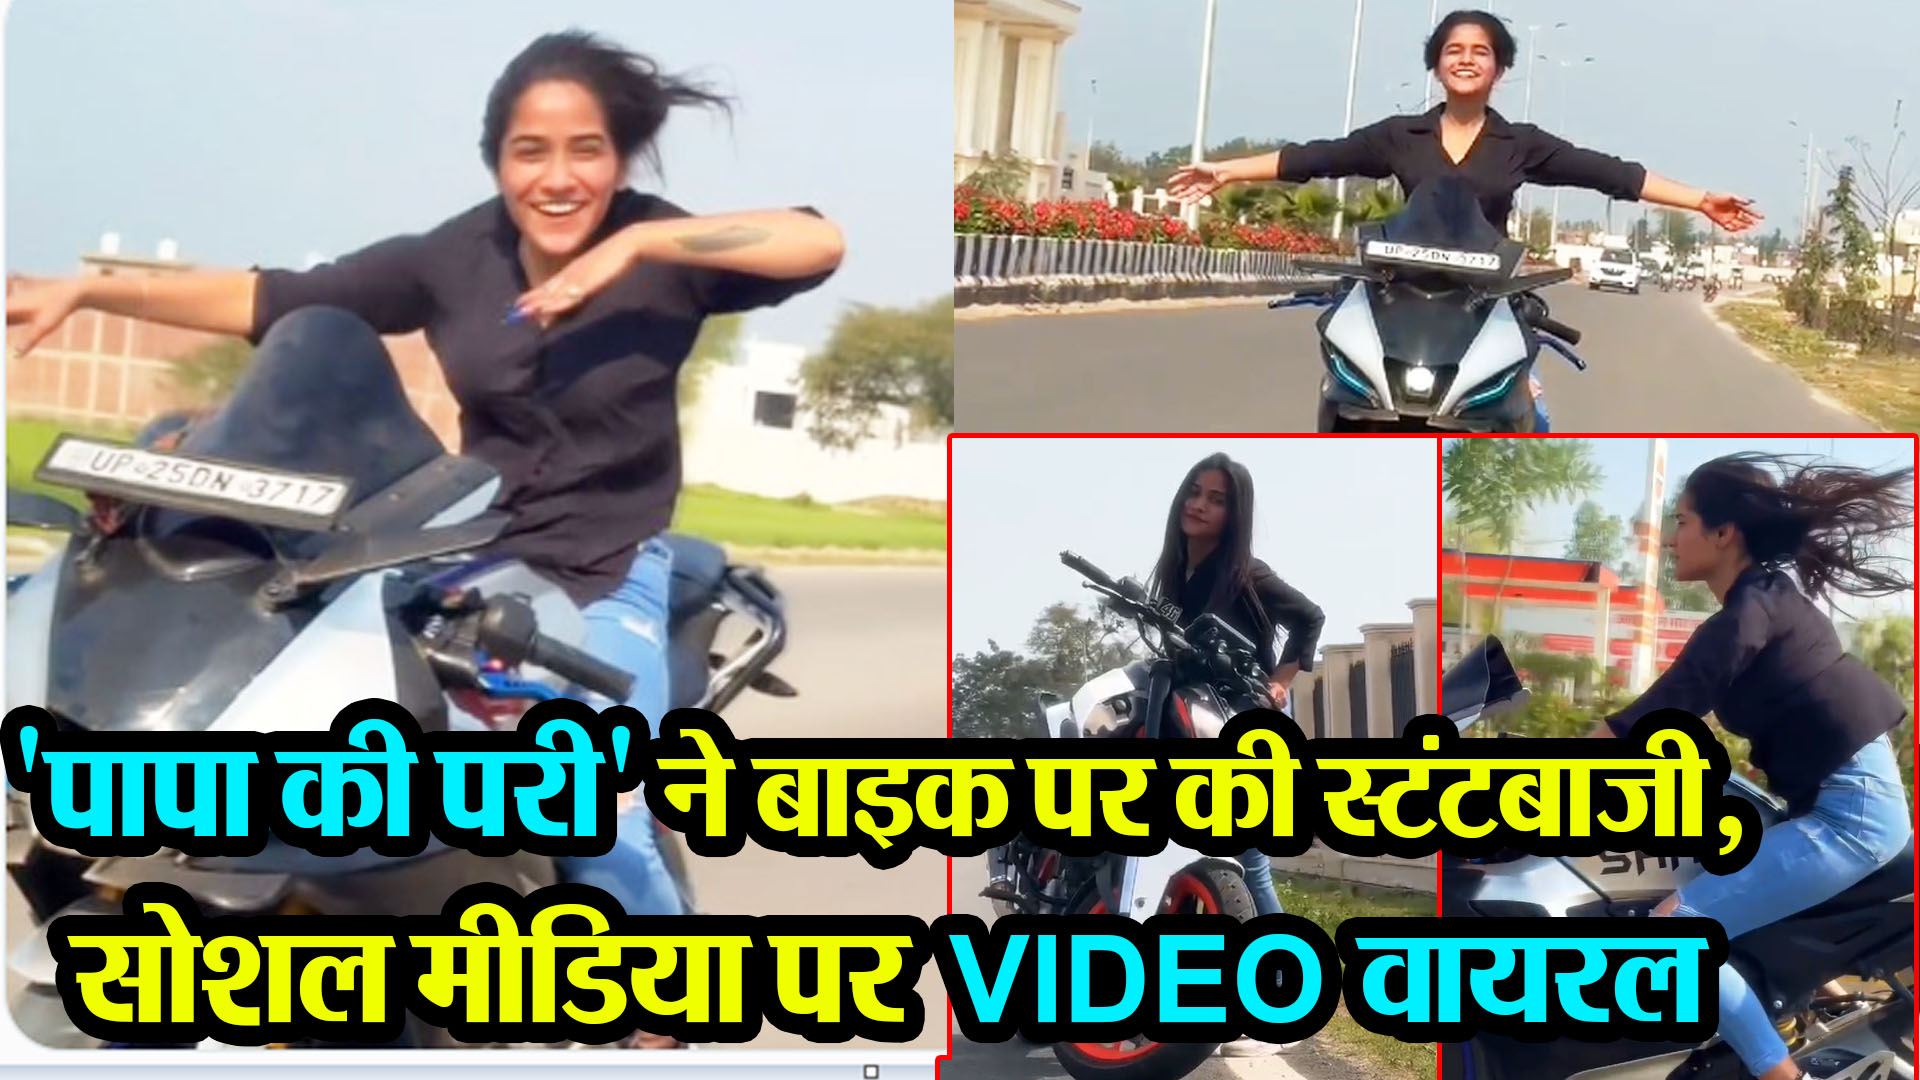 बरेली: 'पापा की परी' ने बाइक पर की स्टंटबाजी, सोशल मीडिया पर VIDEO वायरल